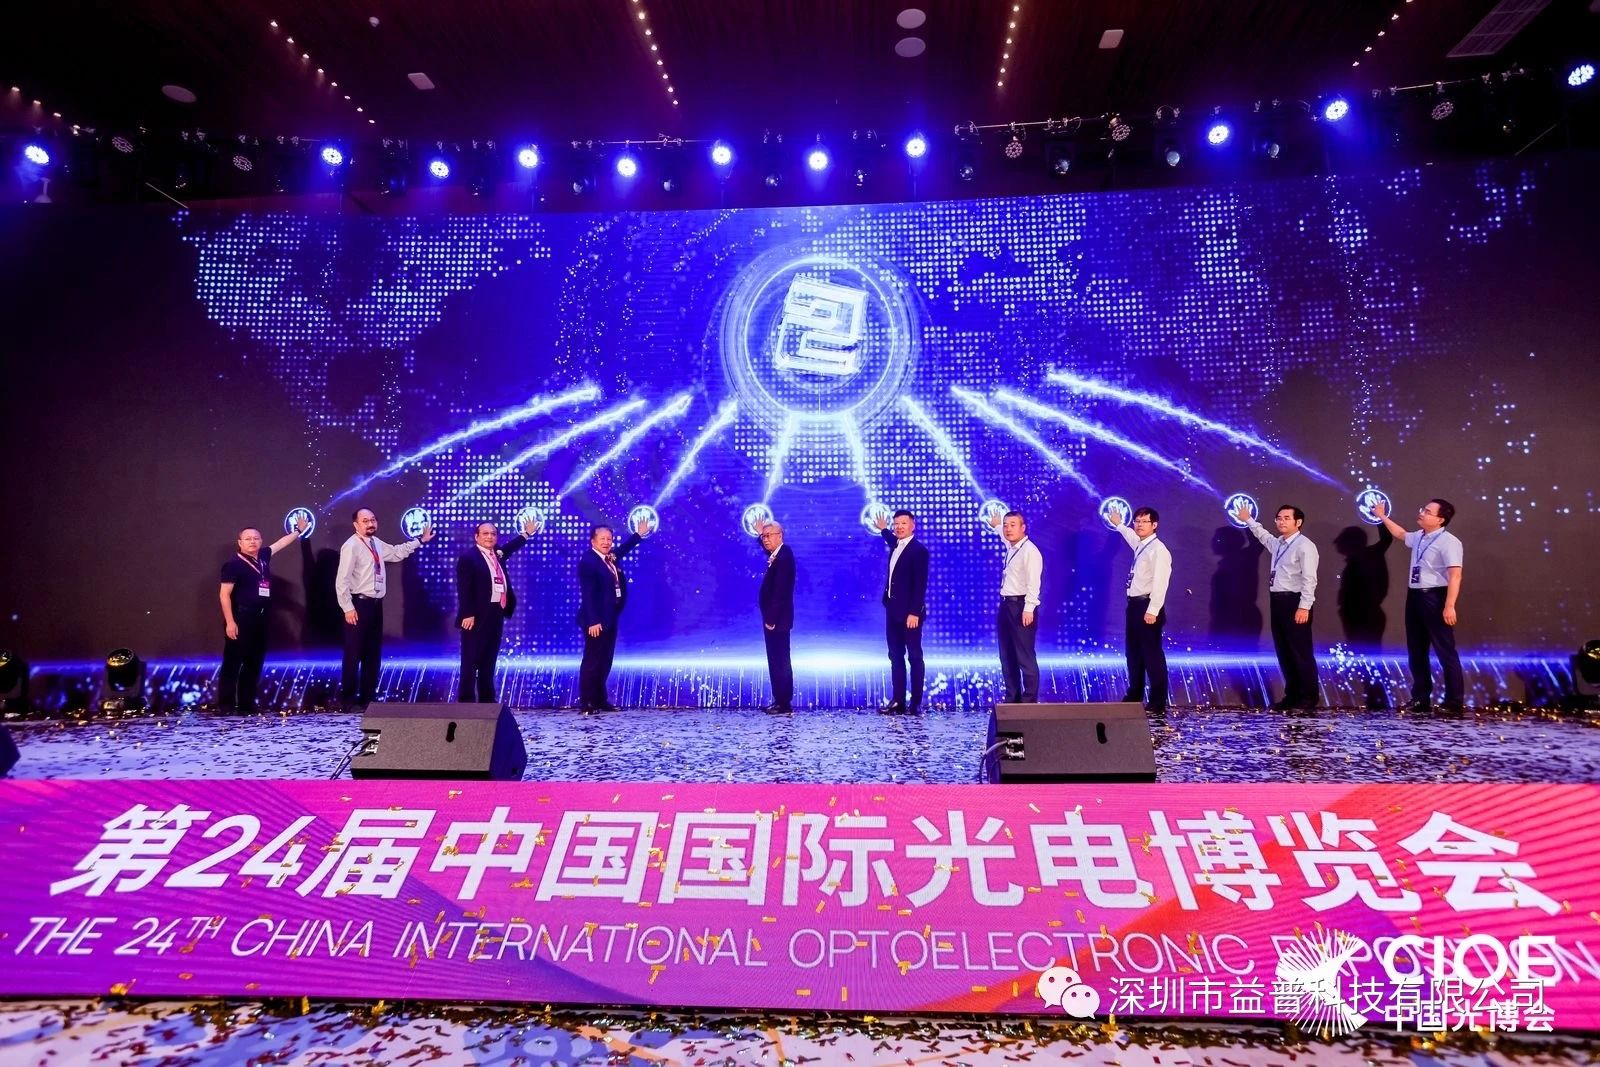 活动资讯 | 太阳成集团tyc33455cc受邀出席第24届中国国际光电博览会